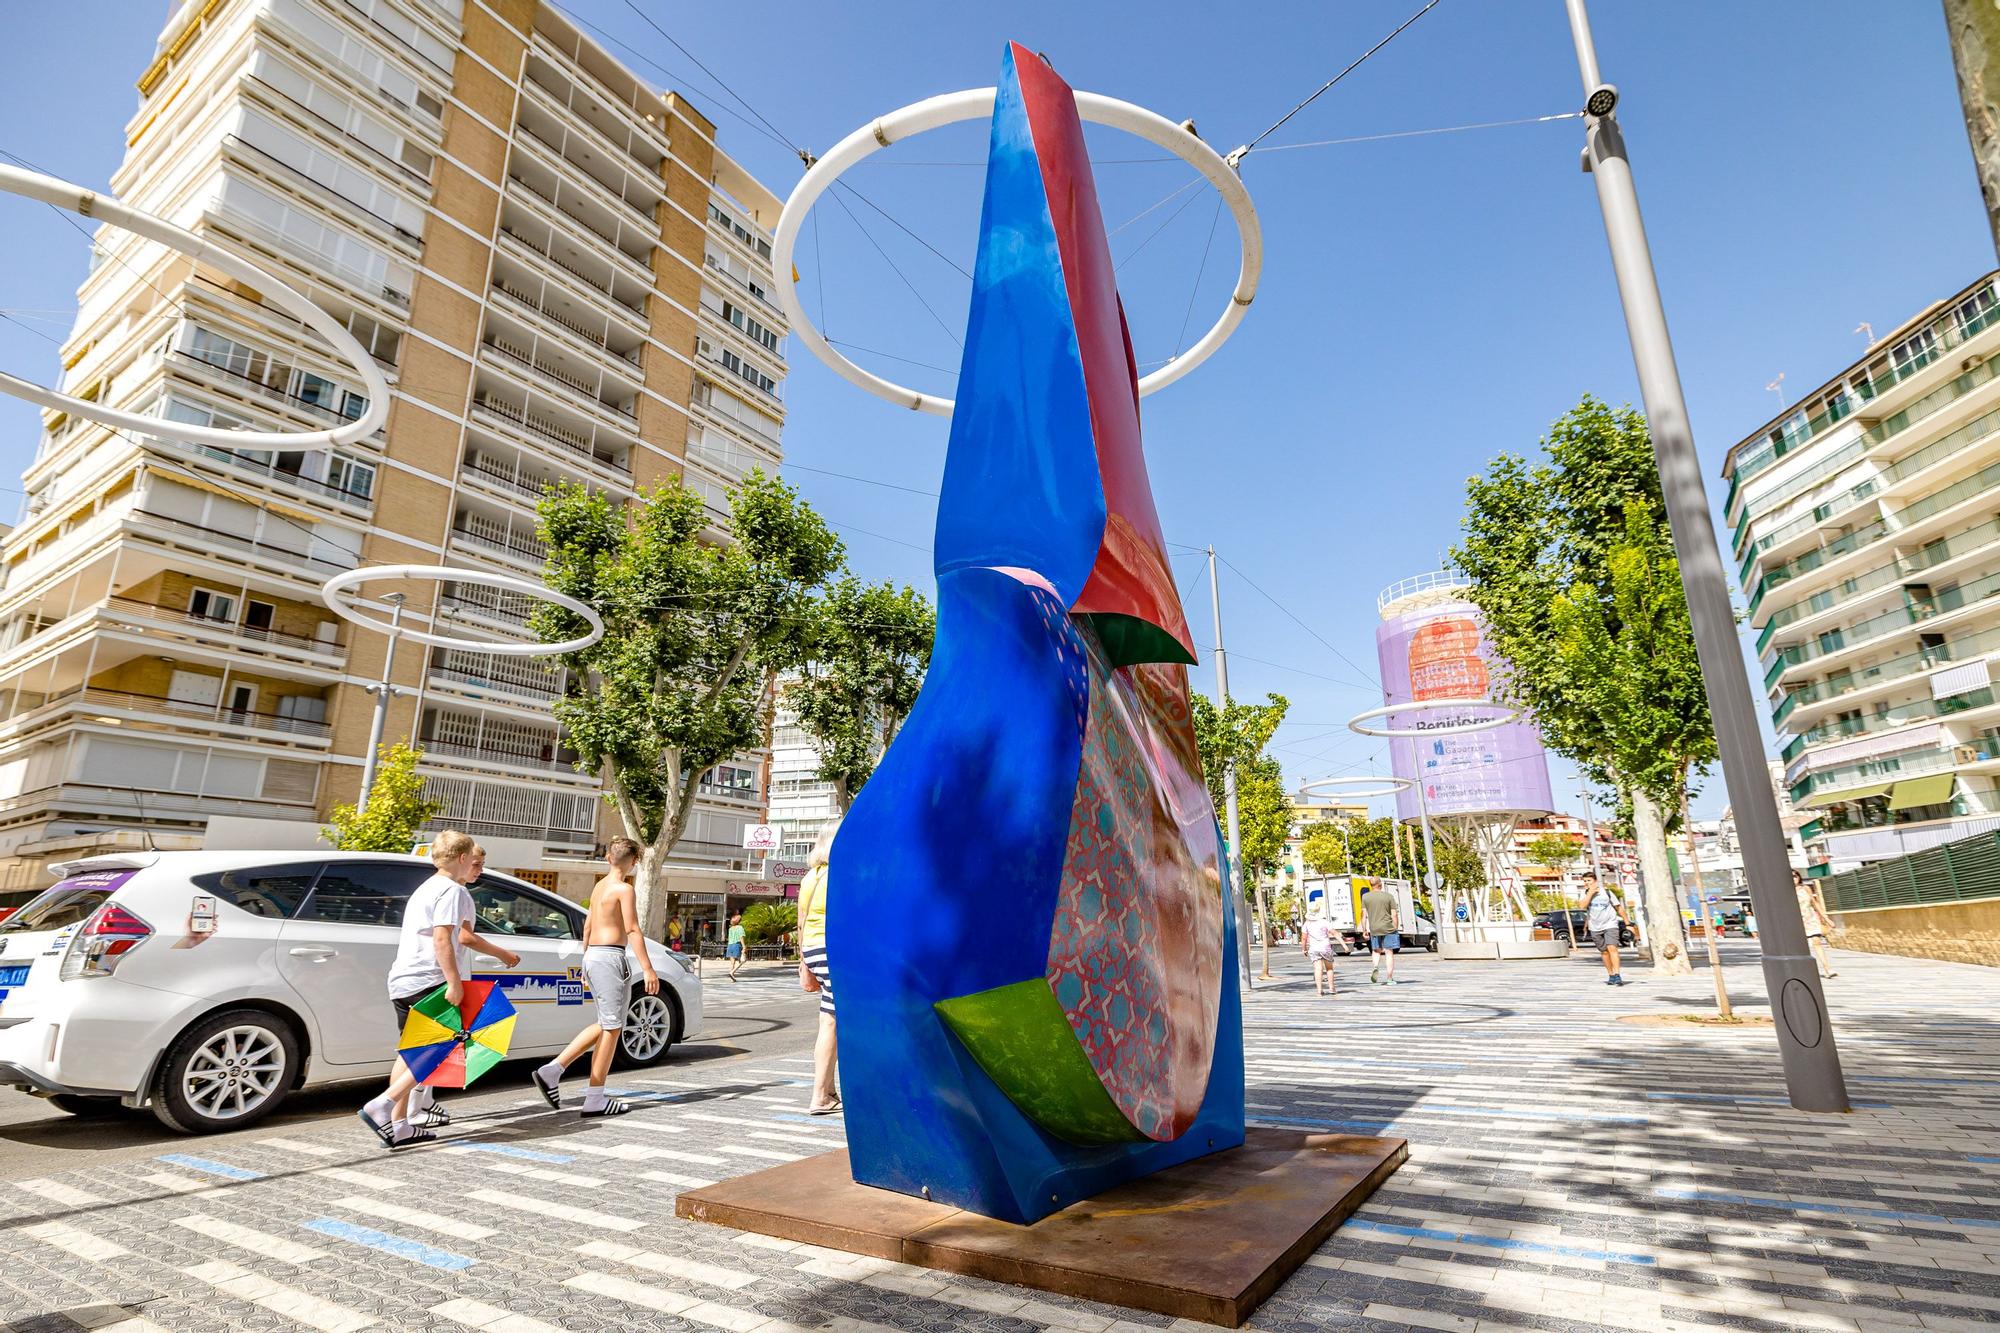 La ciudad acoge 16 esculturas de gran formato del artista Cristóbal Gabarrón, inspiradas en el palacio granadino, que se expondrán gracias a la colaboración entre el Ayuntamiento y la Ciutat de les Arts i les Ciències. Se podrán visitar hasta el 31 de enero de 2023